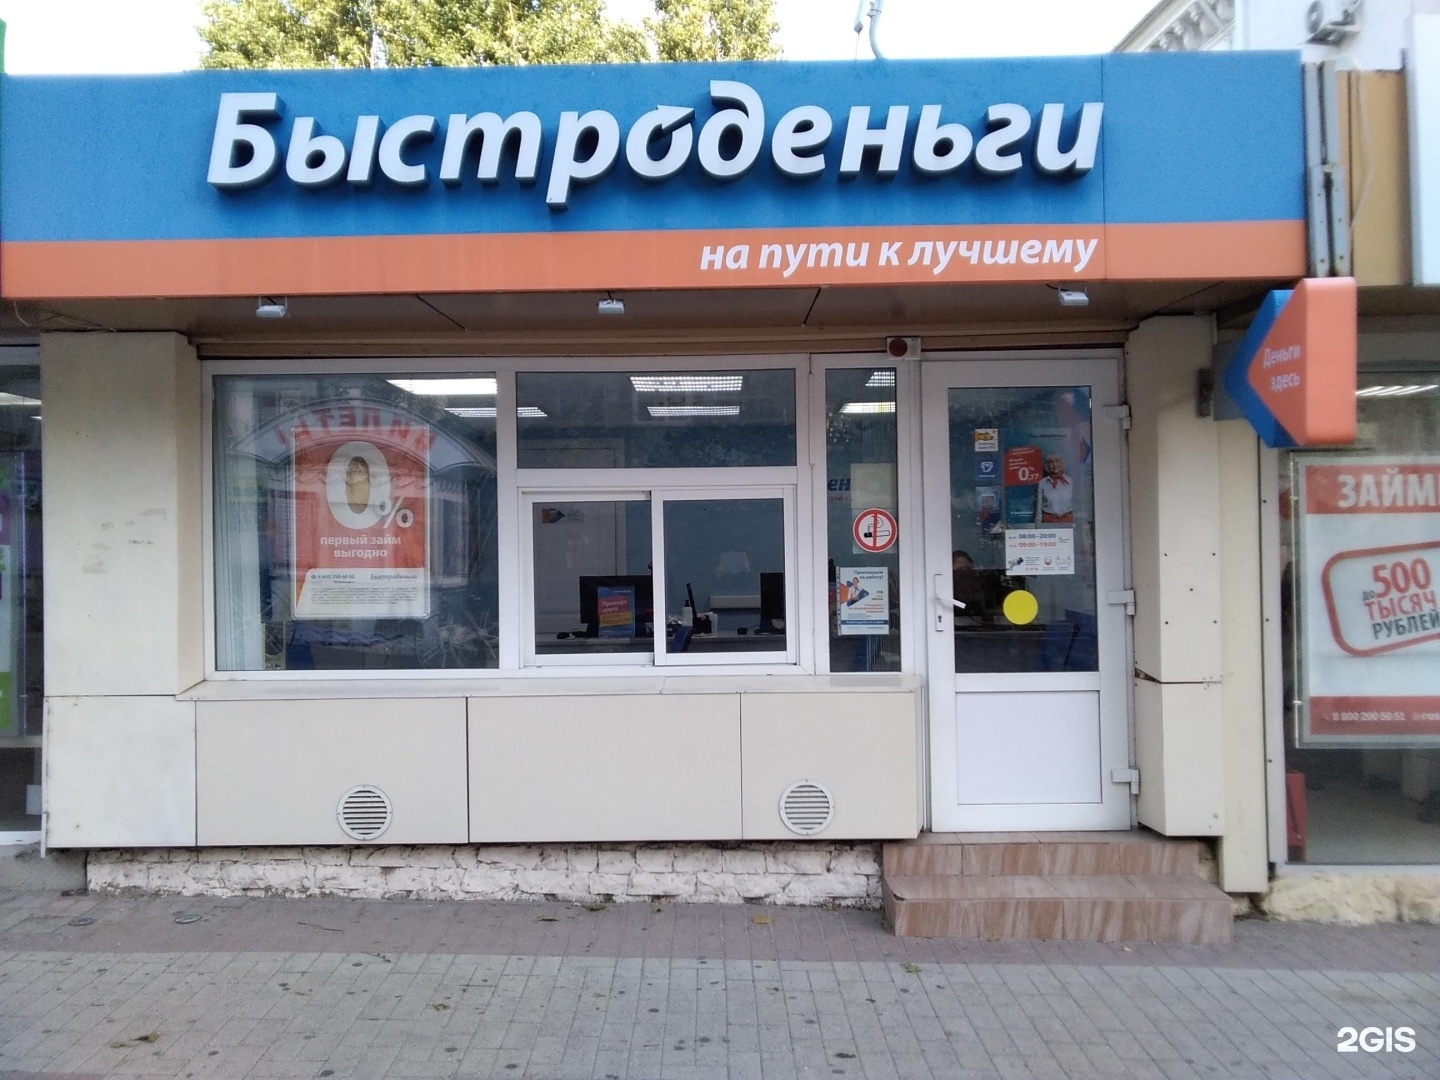 Быстро деньги бесплатный телефон. Быстроденьги офис. Павильон Быстроденьги. Здесь аптека Новороссийск. Быстроденьги автомобиль.